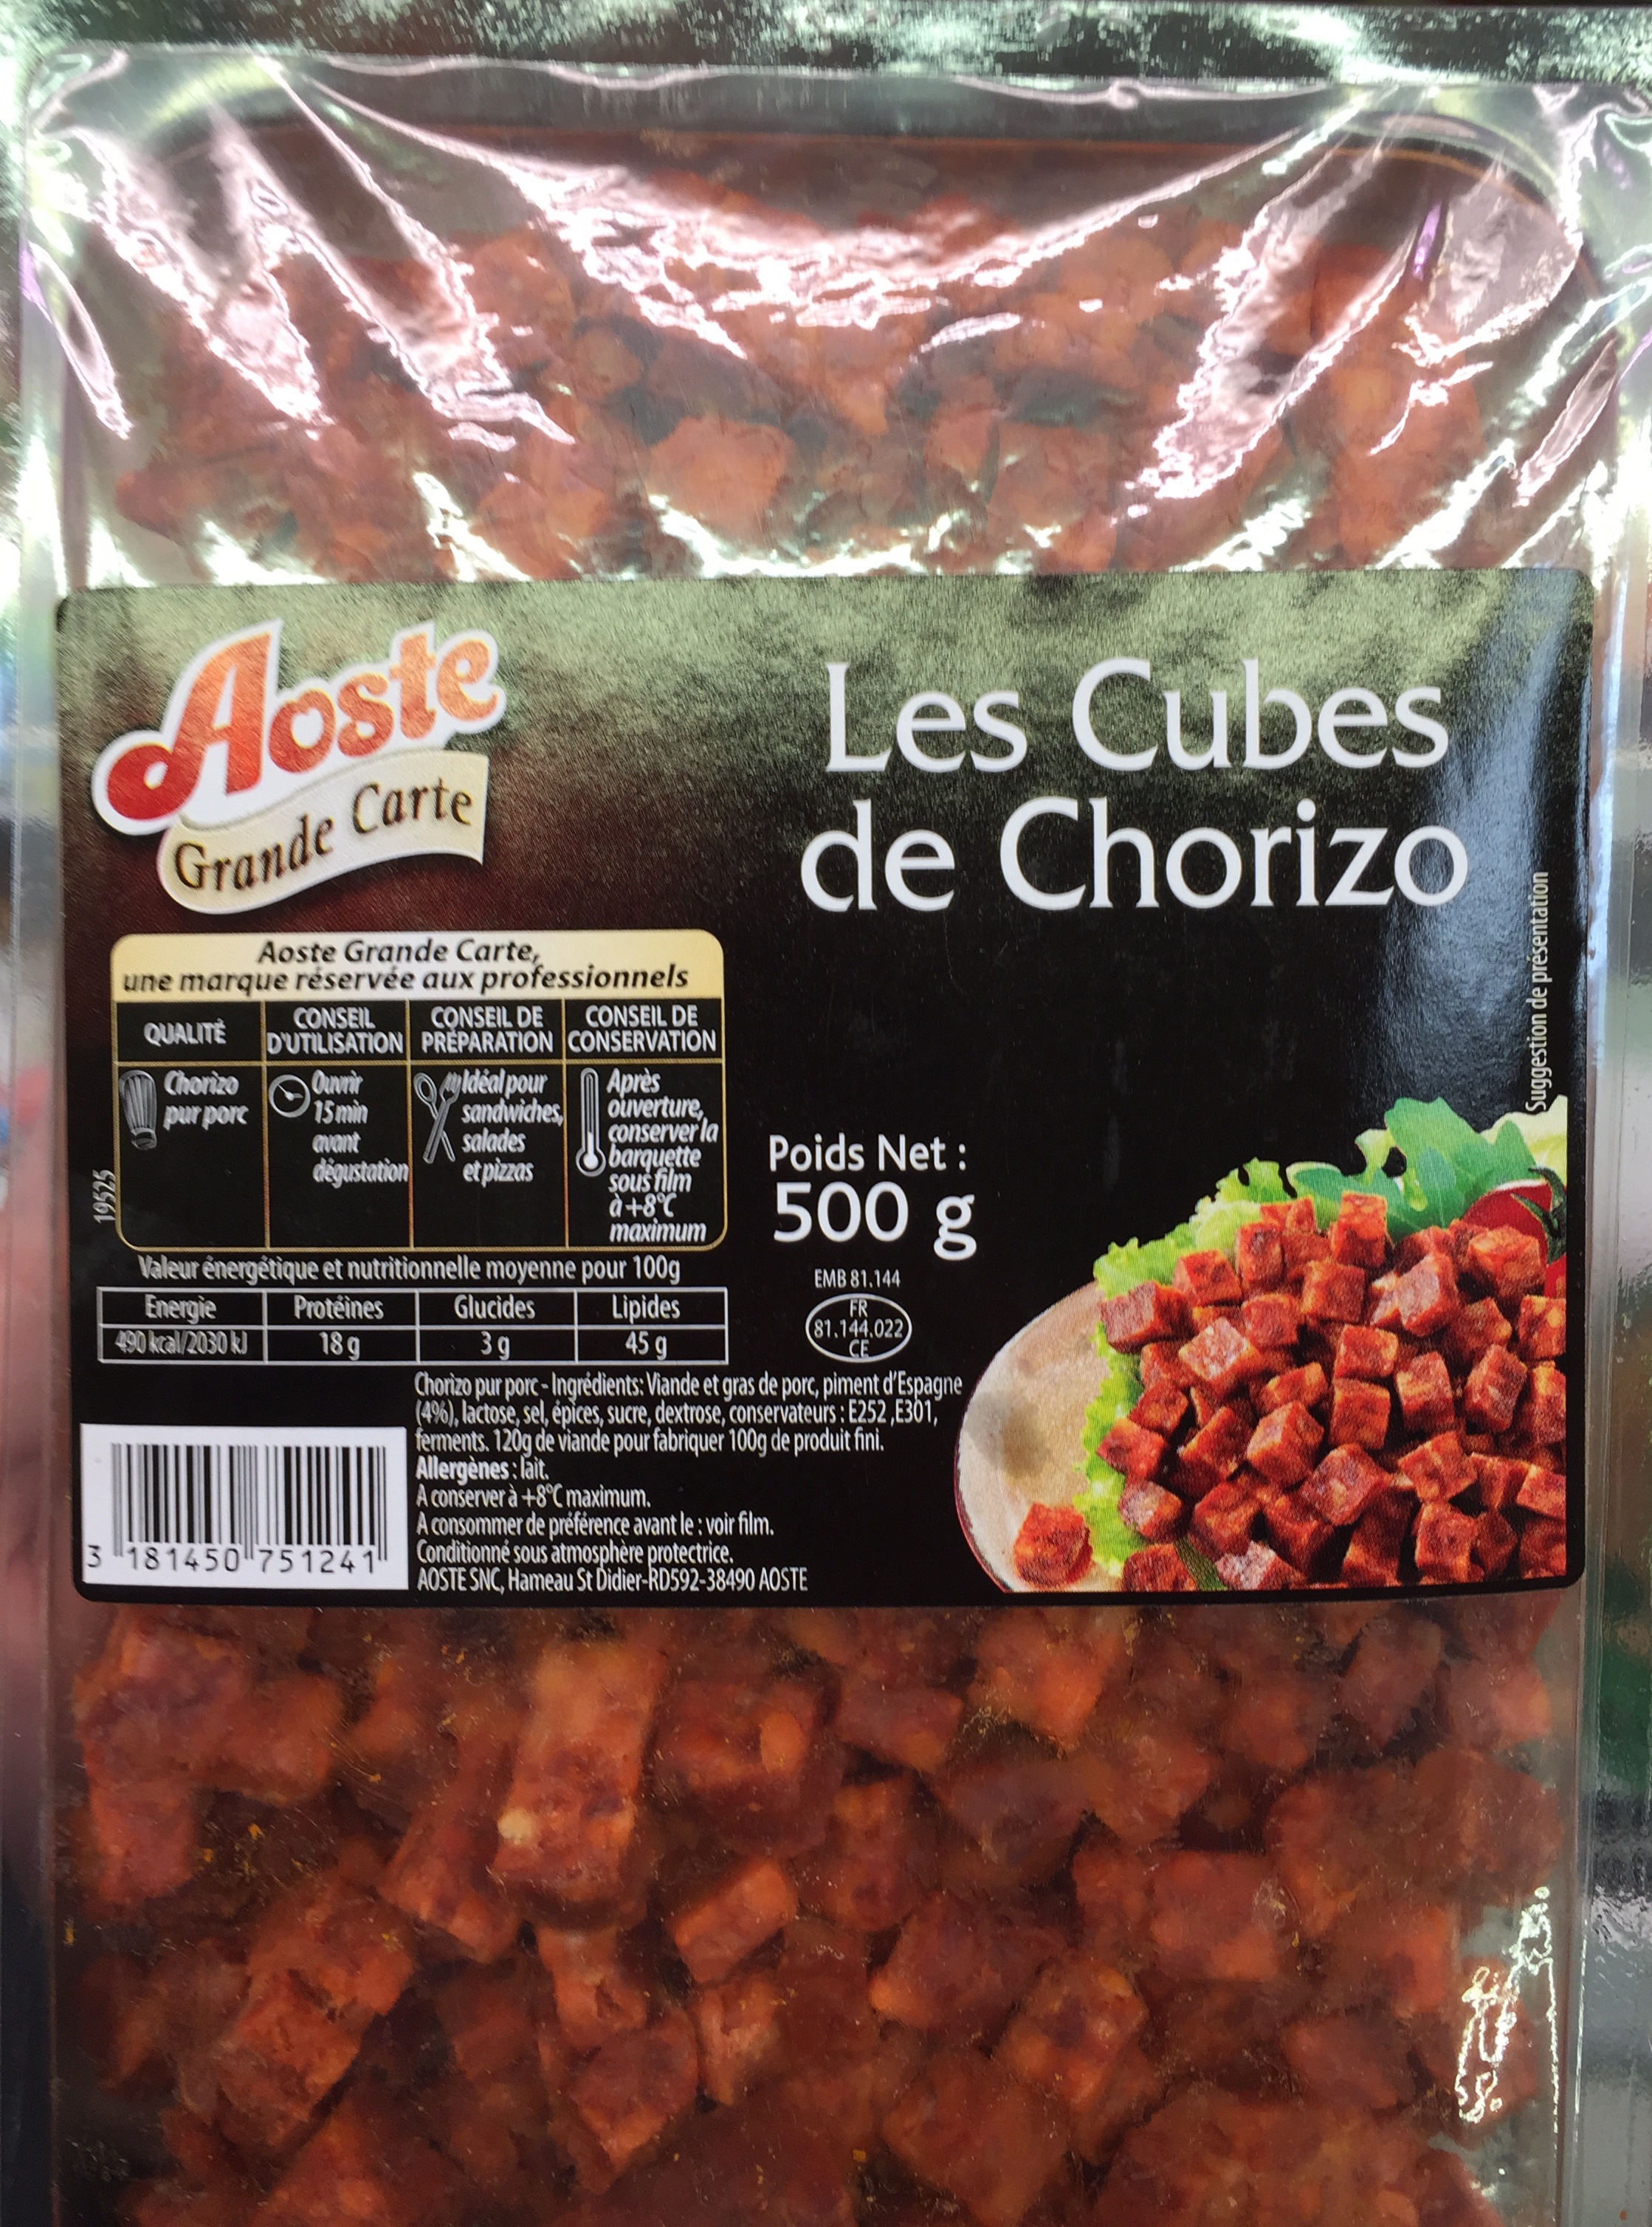 Les Cubes de Chorizo - Producto - fr